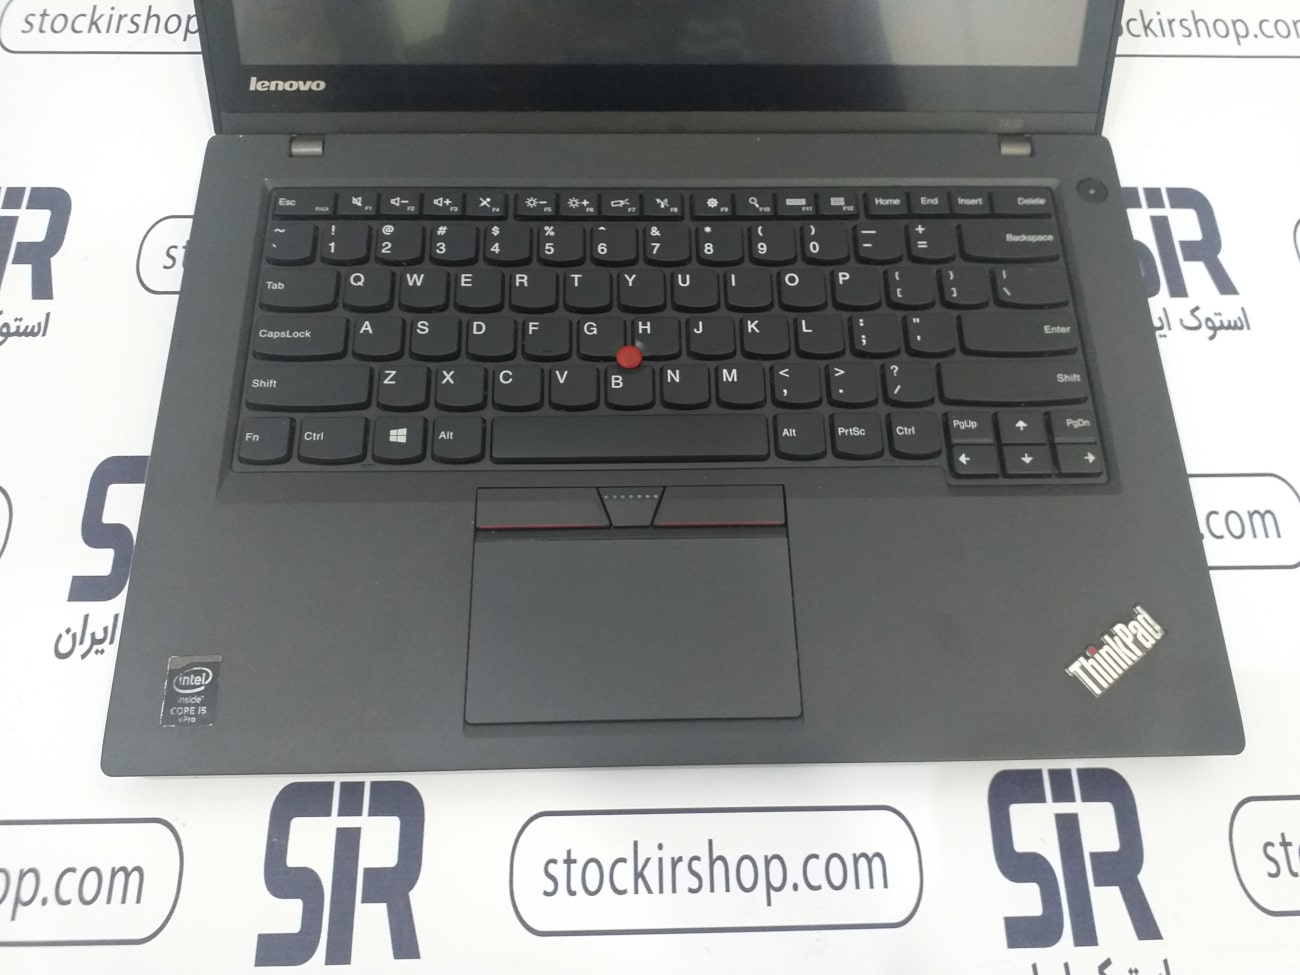 لپ تاپ استوک Lenovo Thinkpad T450